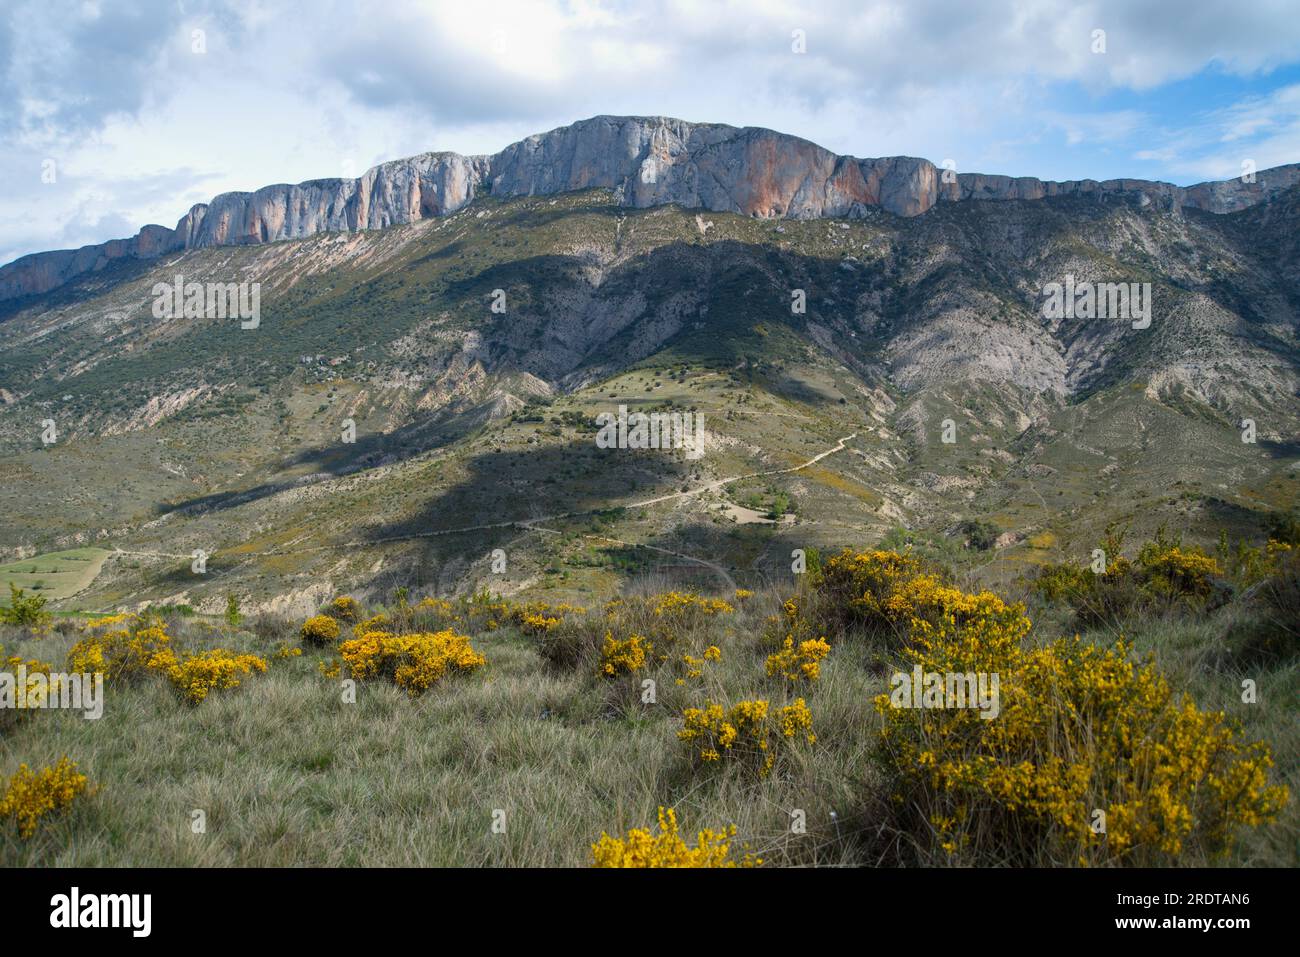 Paisaje de la Sierra de Boumort, Lerida, España, Landscape of Sierra de Boumort, Lerida, Spain Stock Photo